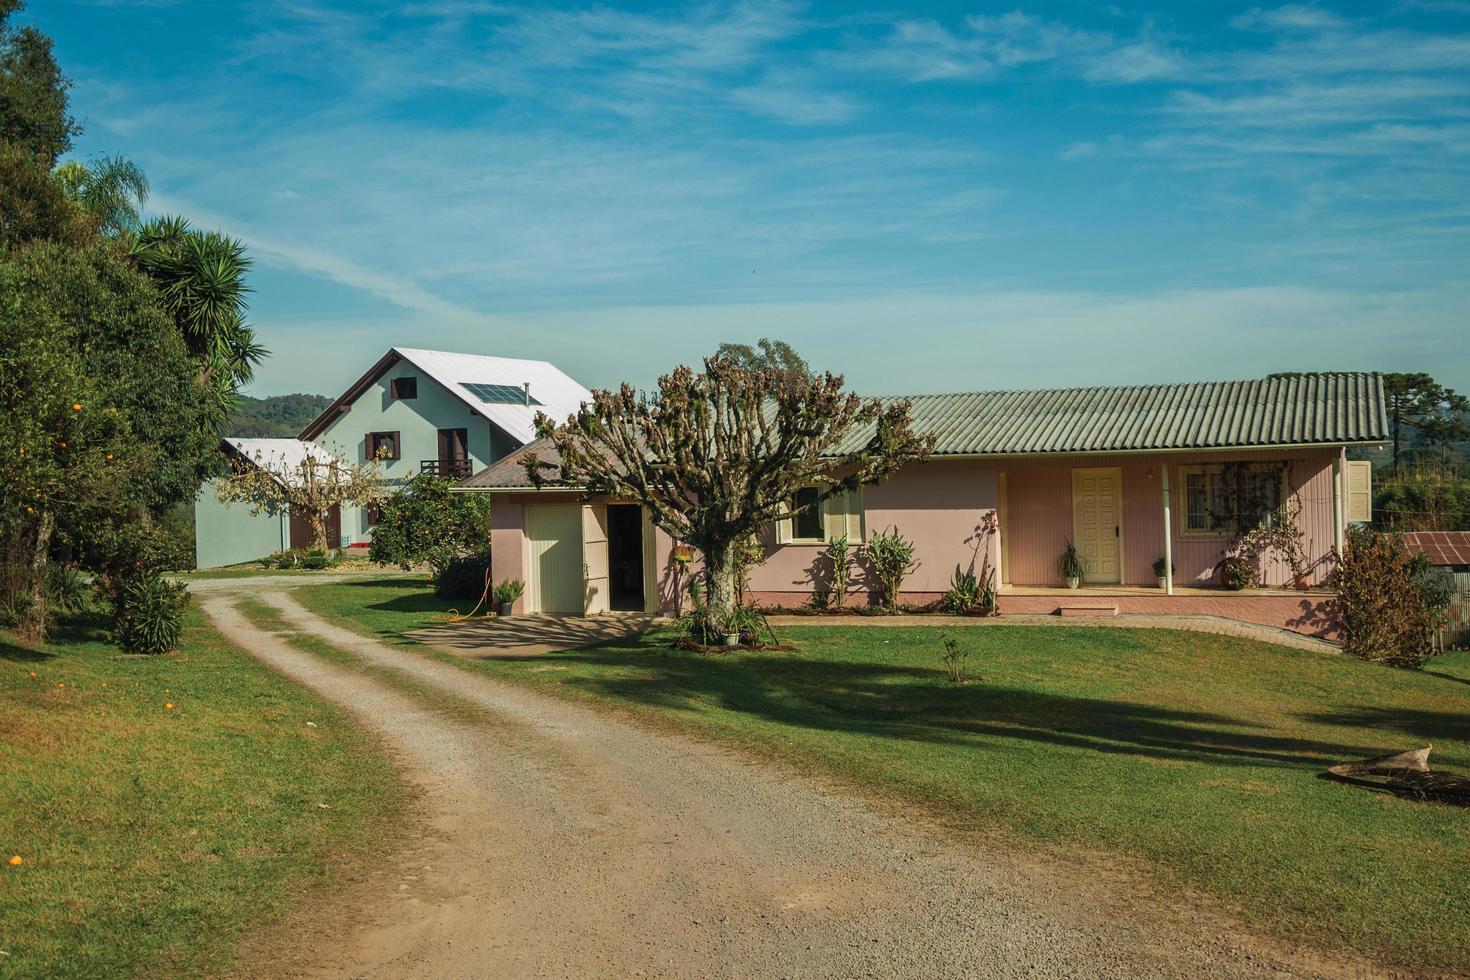 bento goncalves, brésil - 12 juillet 2019. charmante maison de campagne moderne avec allée et jardin luxuriant, dans un paysage rural près de bento goncalves. photo